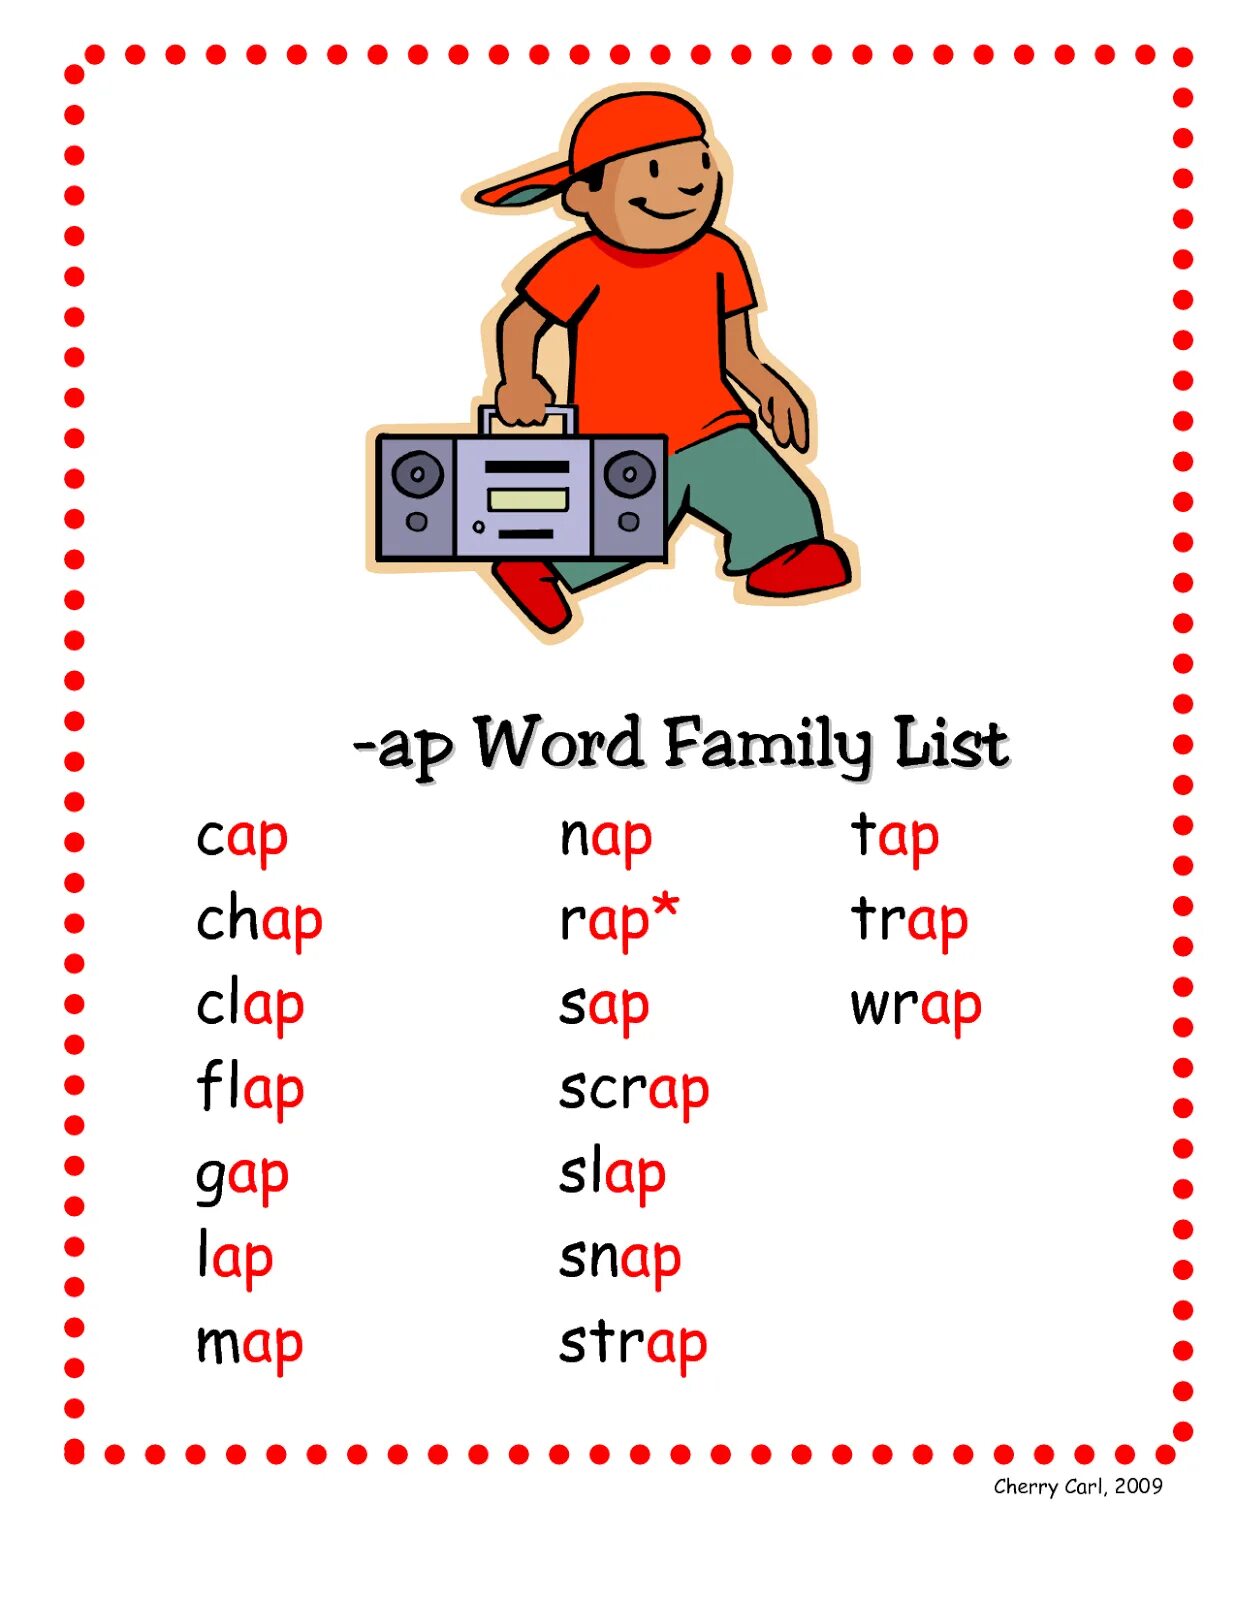 Make word family. Family Words. Word Family Words. Family English Words. Word Family list.